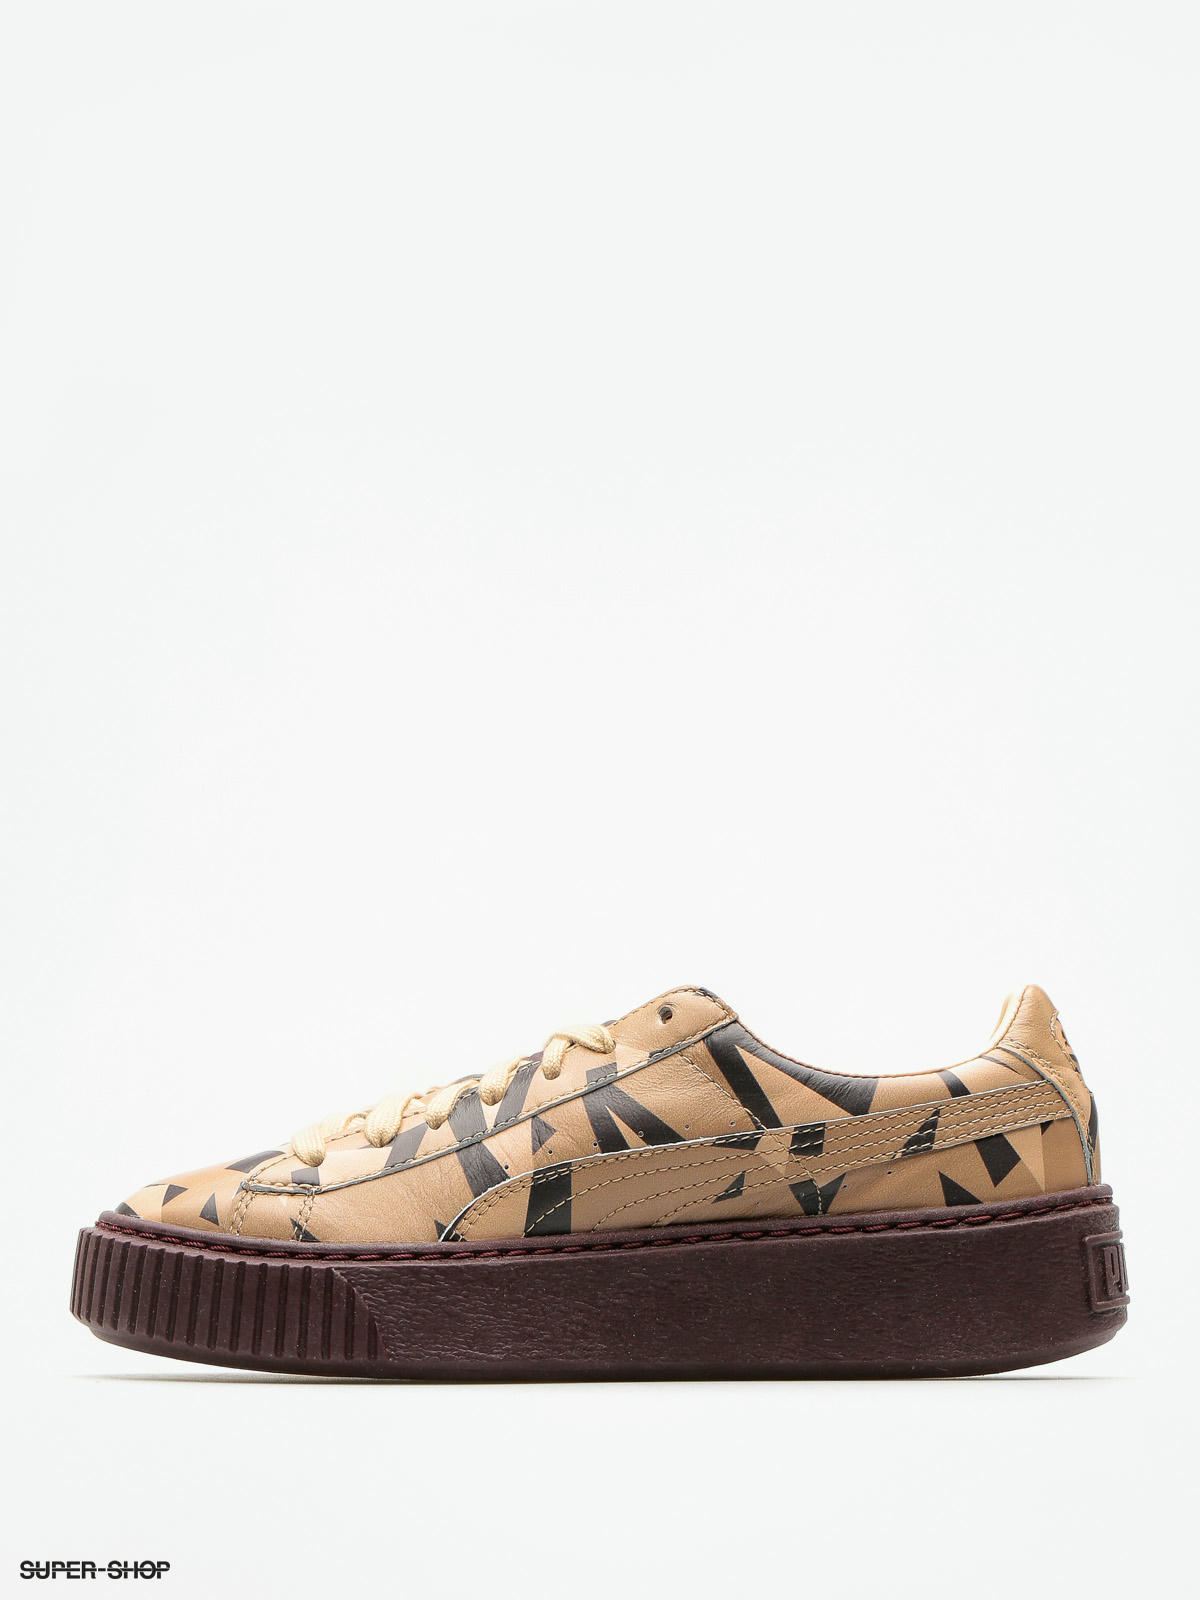 cheetah puma shoes